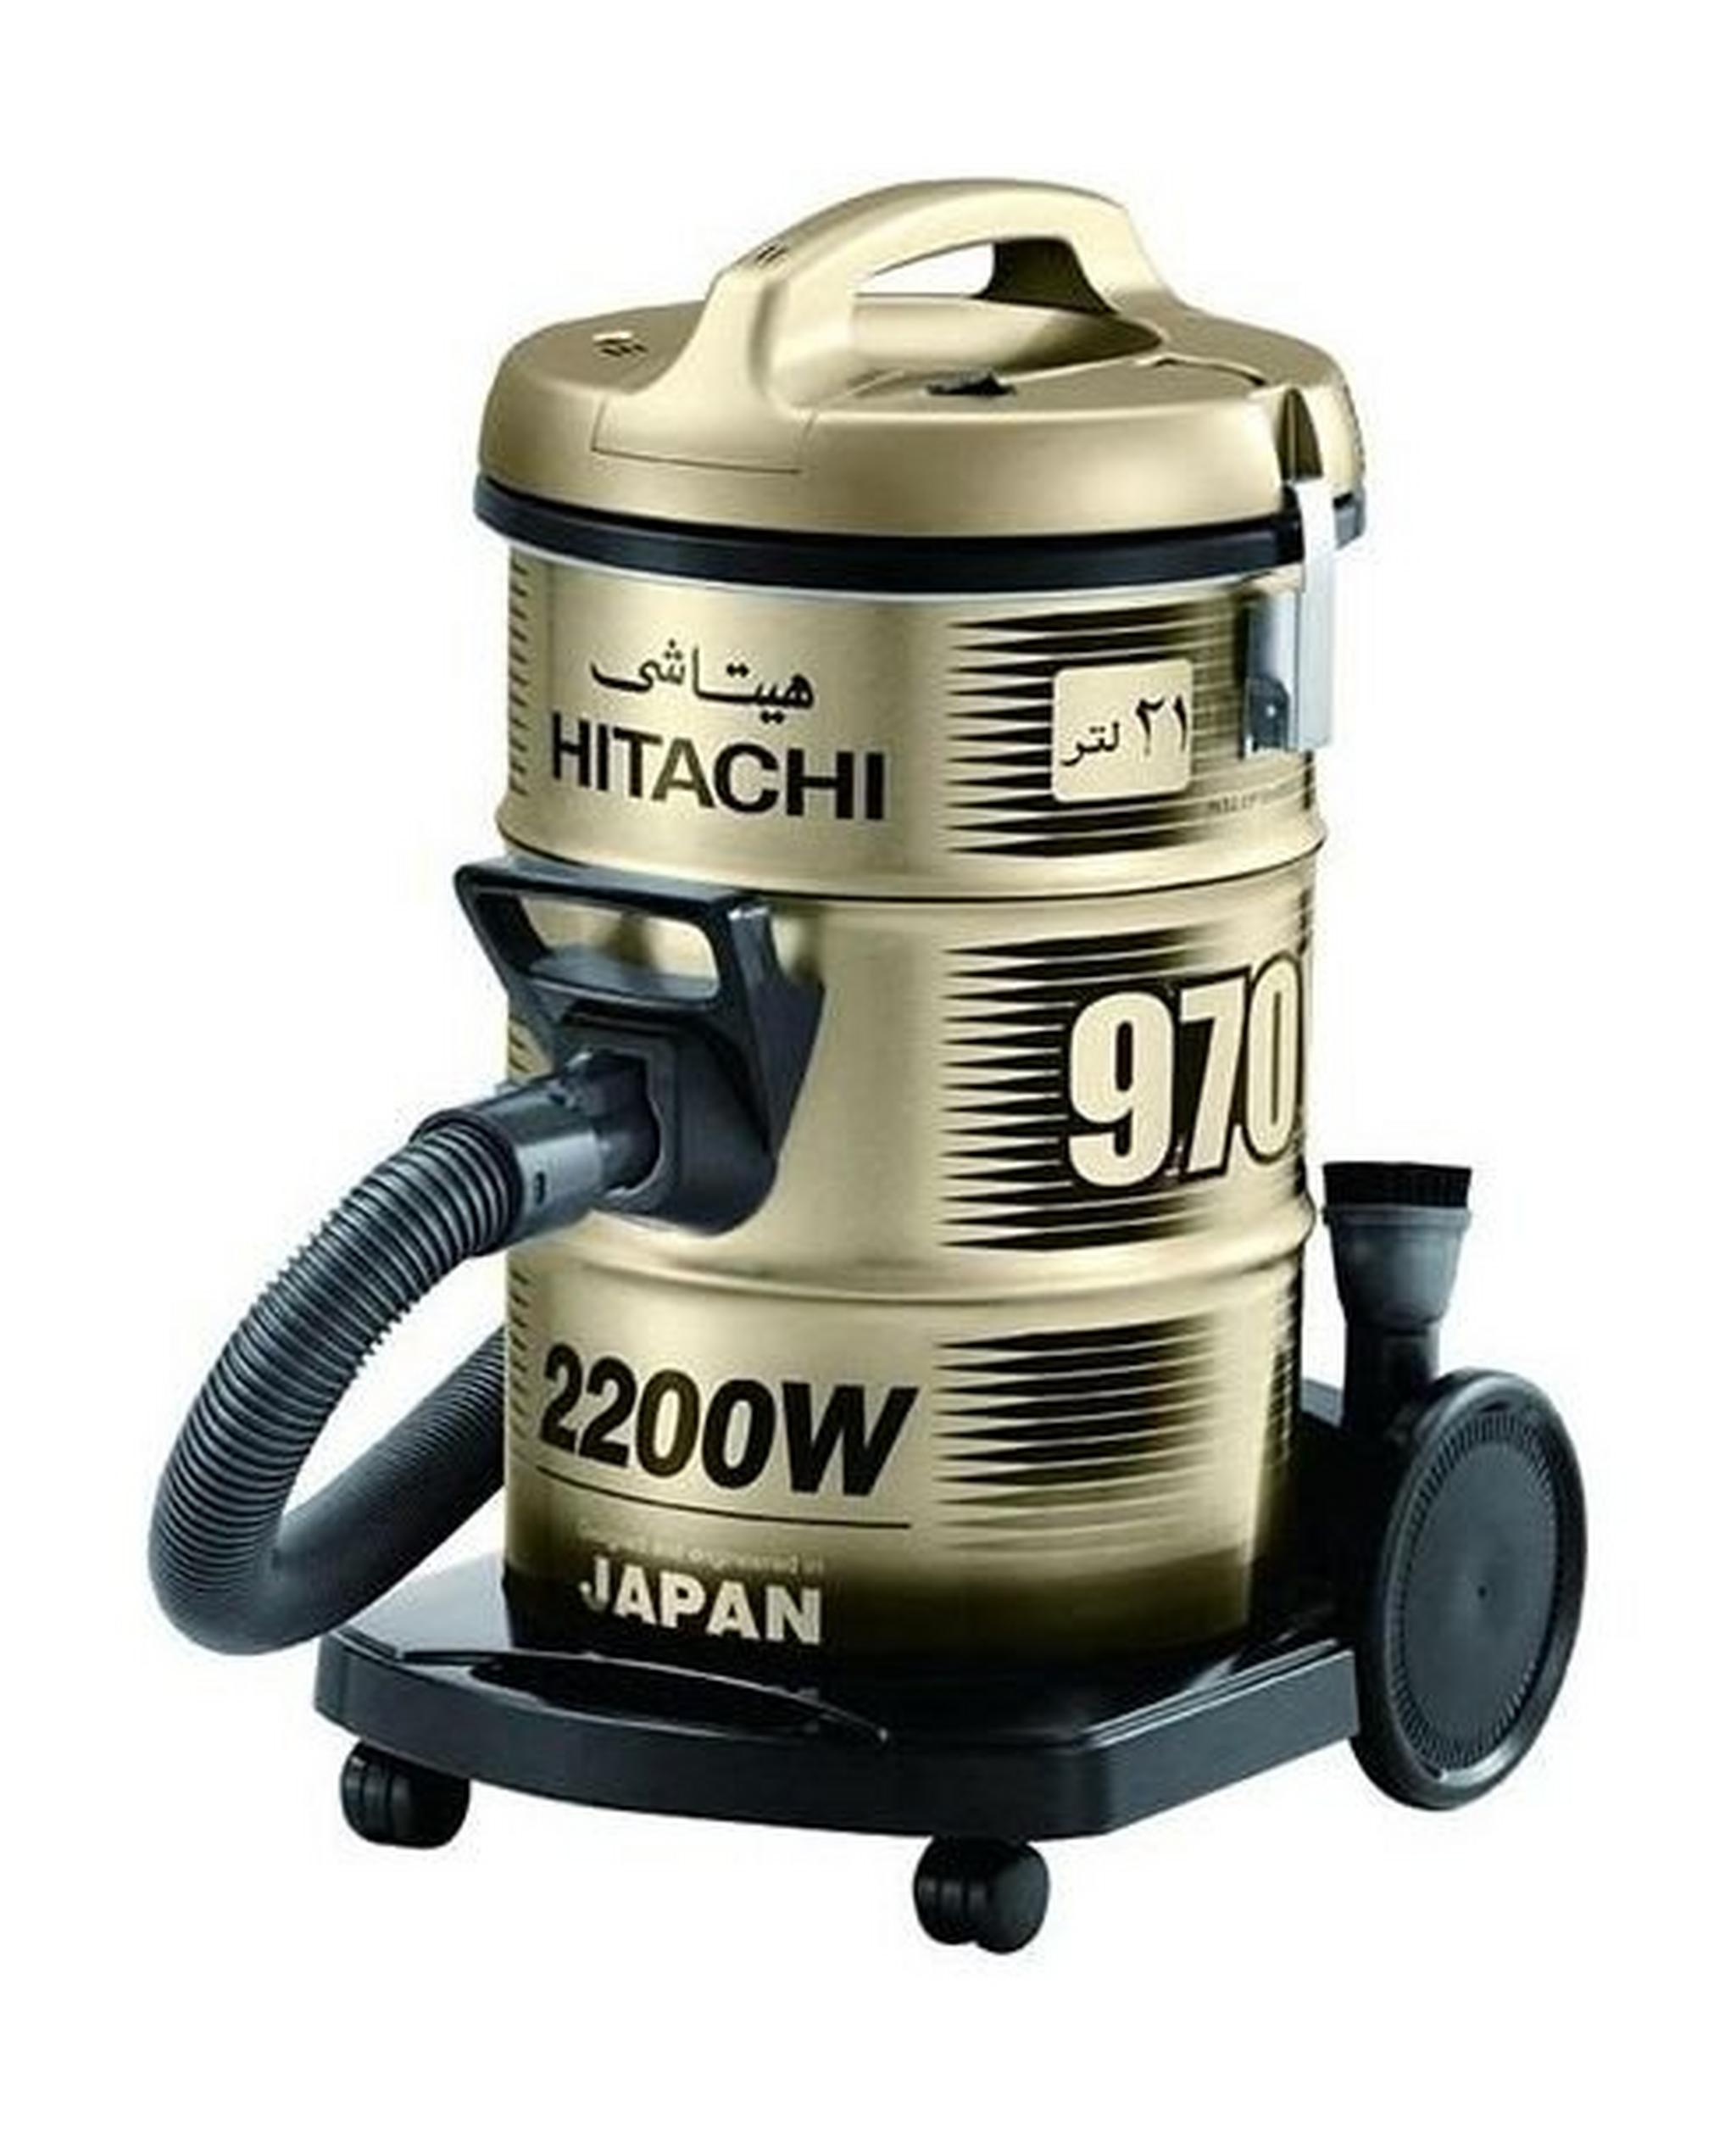 Hitachi 2200W 21L Drum Vacuum Cleaner (CV-970Y) – Gold